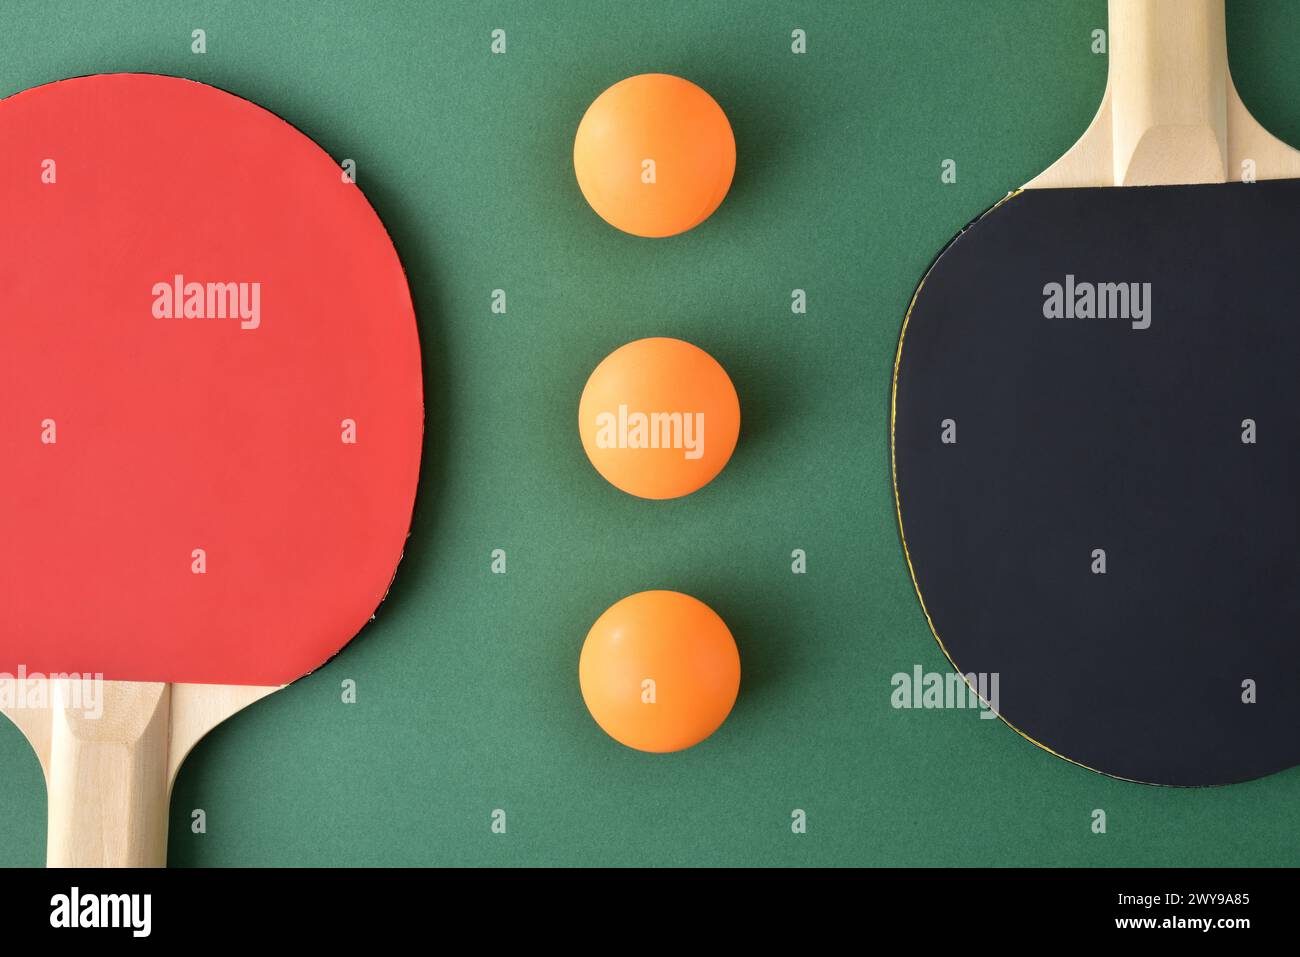 Composition avec jeu de pagaies de ping-pong et trois boules orange sur une table de jeu verte. Vue de dessus. Banque D'Images